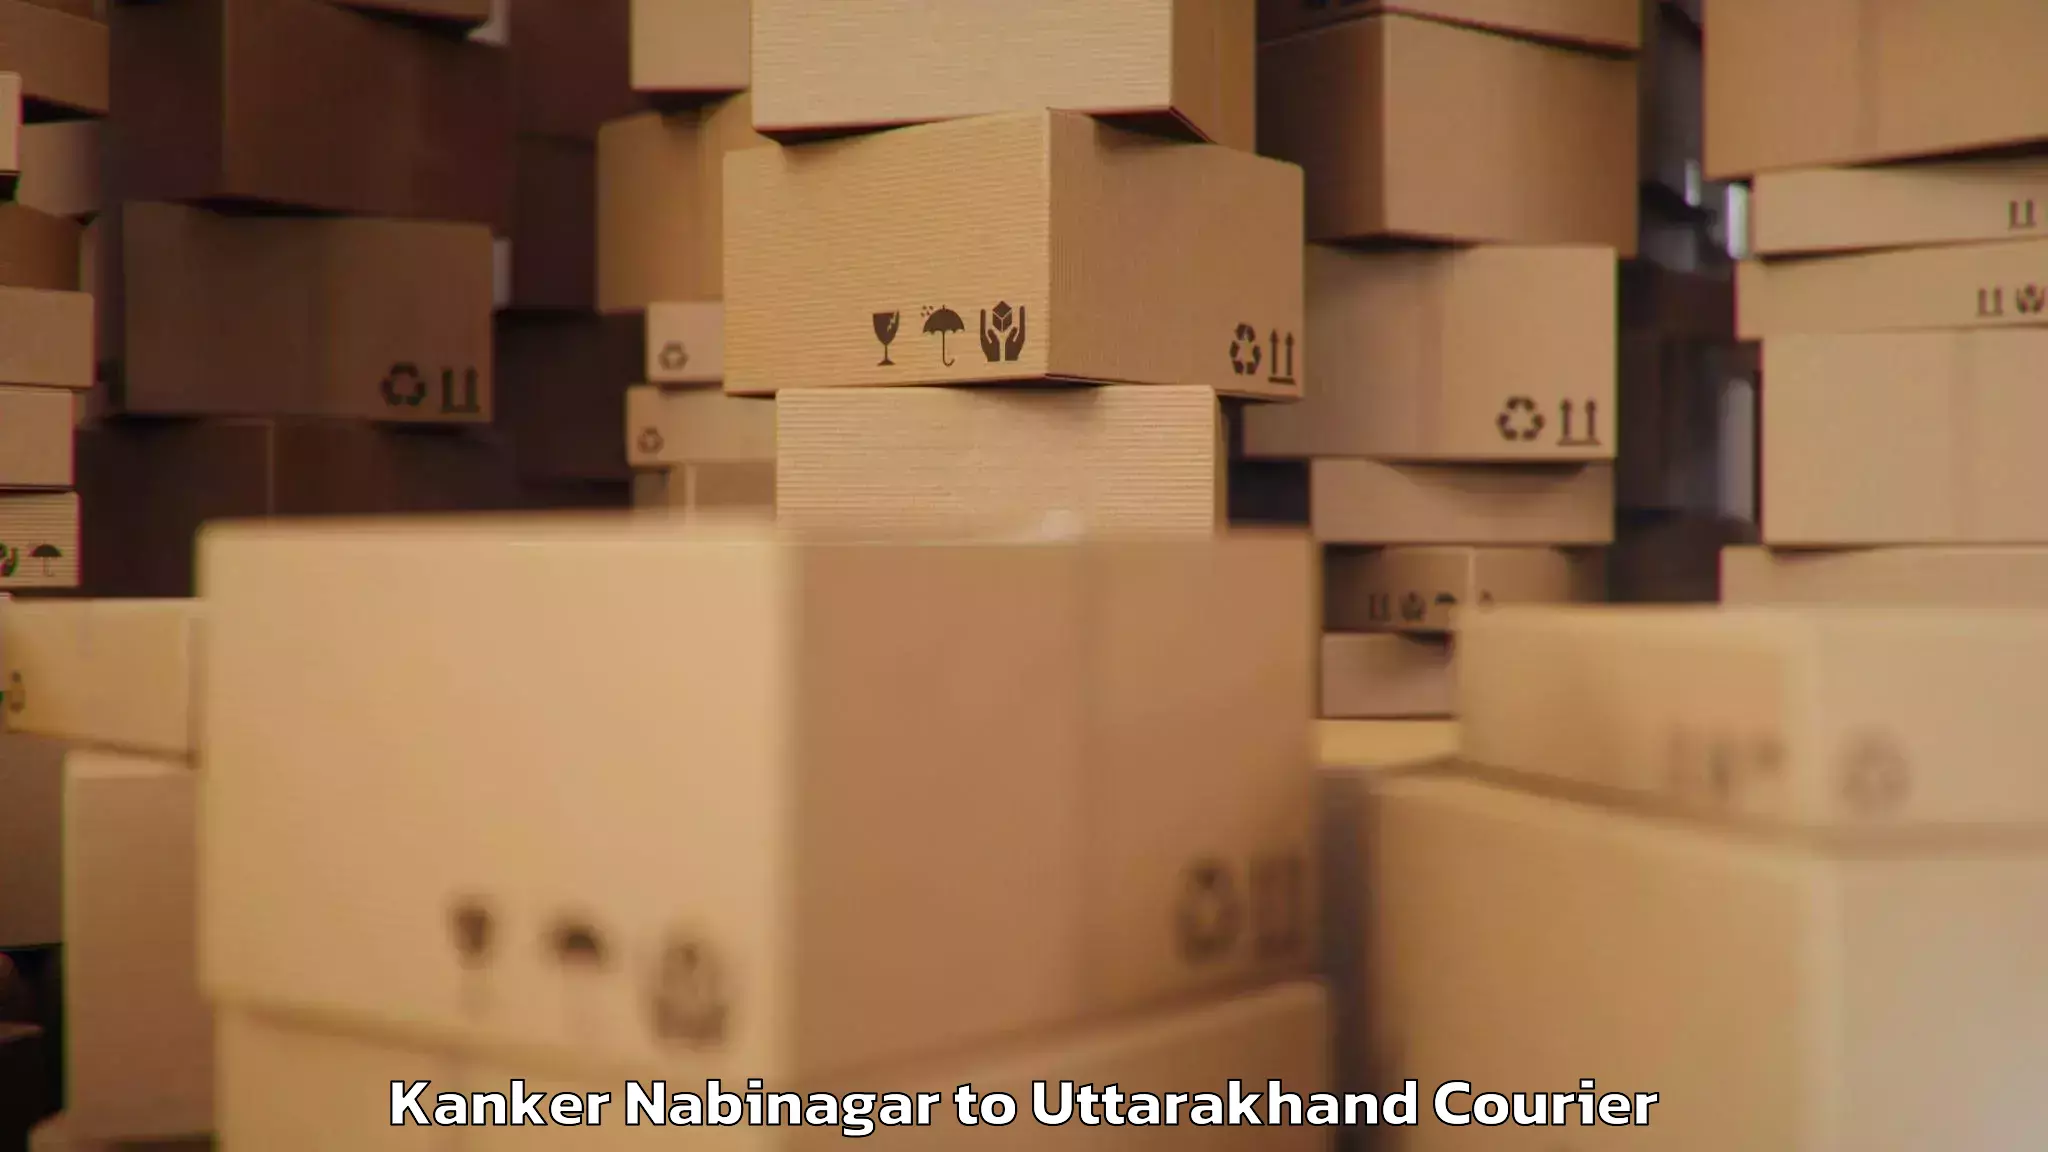 Baggage shipping quotes Kanker Nabinagar to Ramnagar